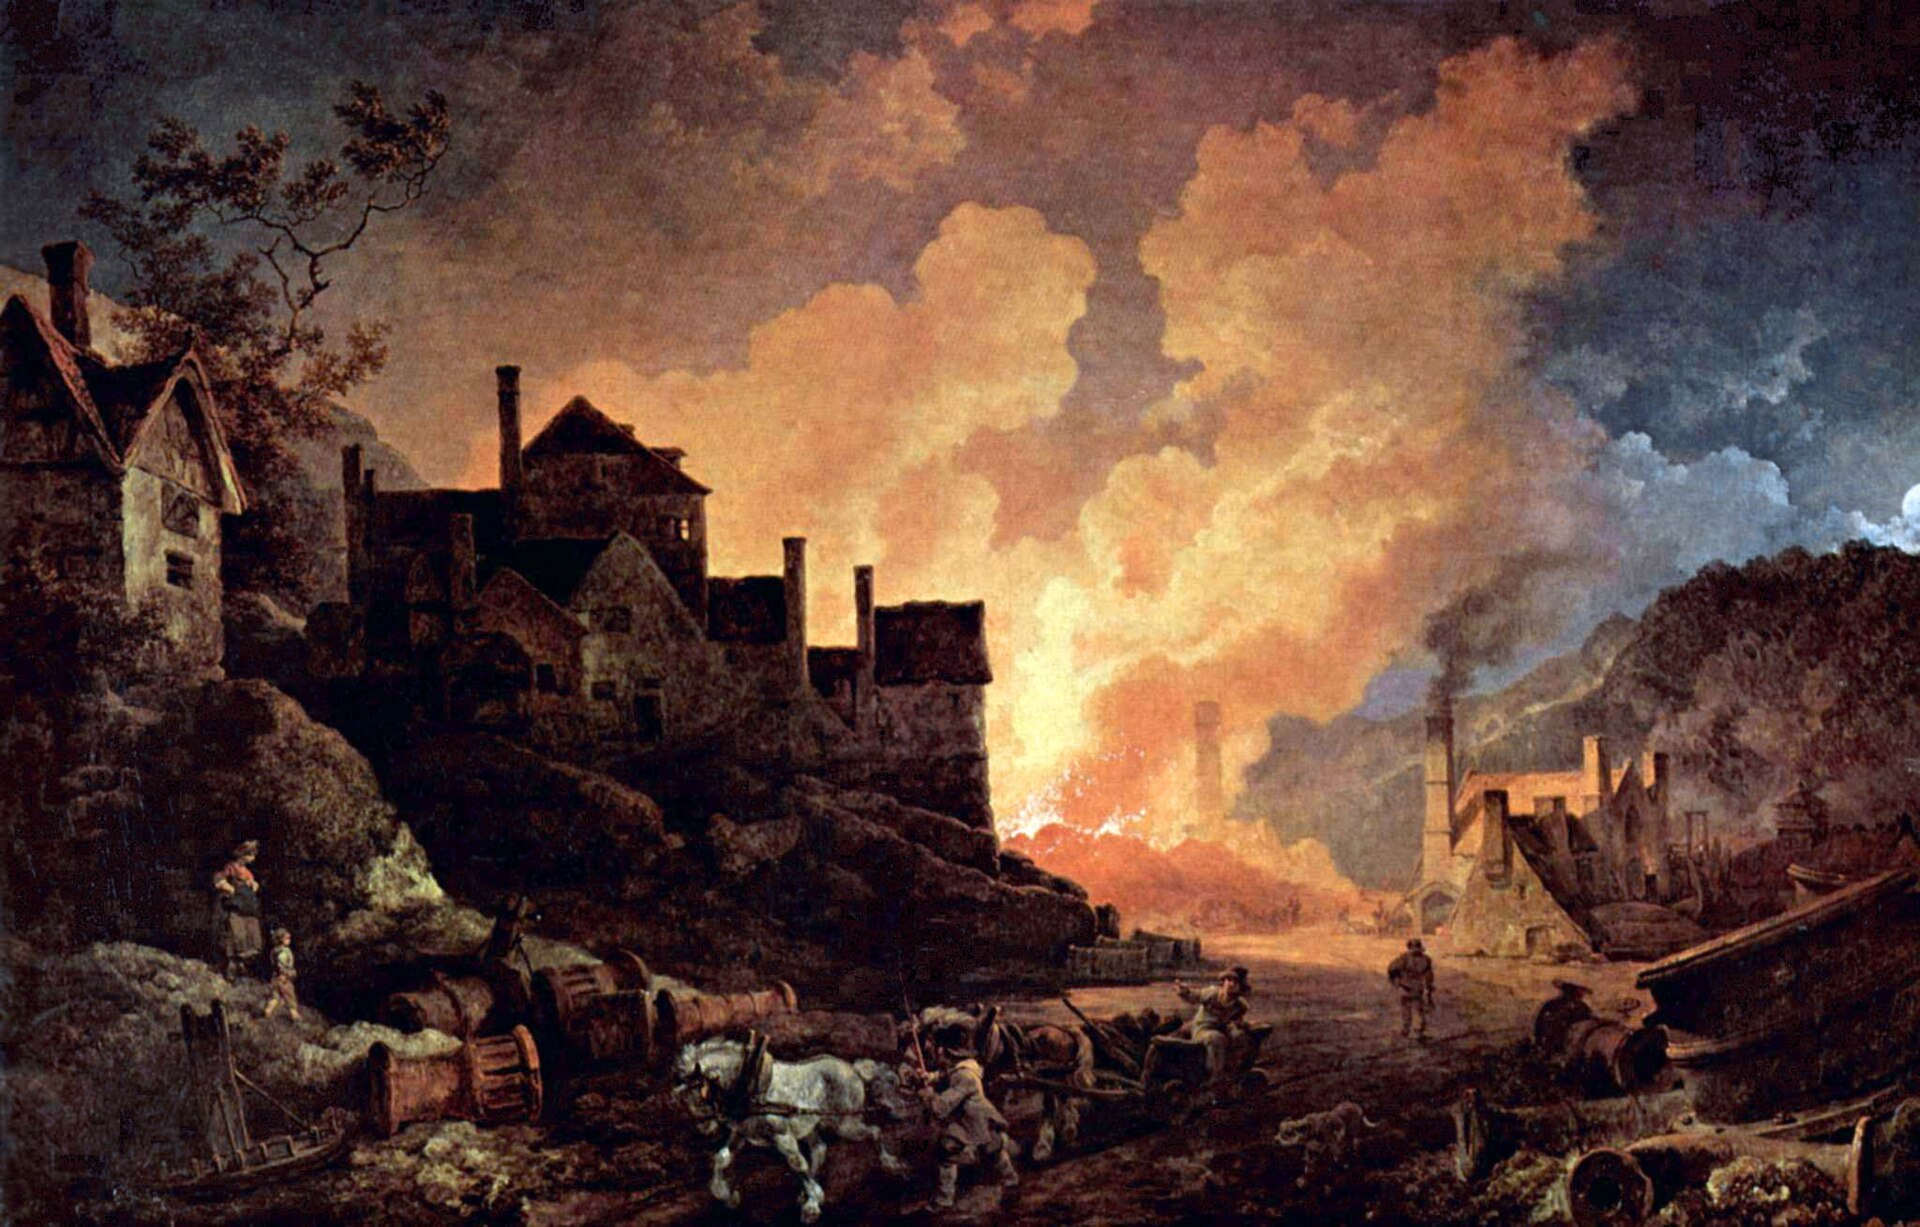 Coalbrookdale de noche, pintura al óleo del artista inglés de origen francés Philip James de Loutherbourg (nacido en 1740 y fallecido en 1812). Coalbrookdale (condado de Shropshire, Inglaterra) es considerado una de las cunas de la Revolución Industrial.